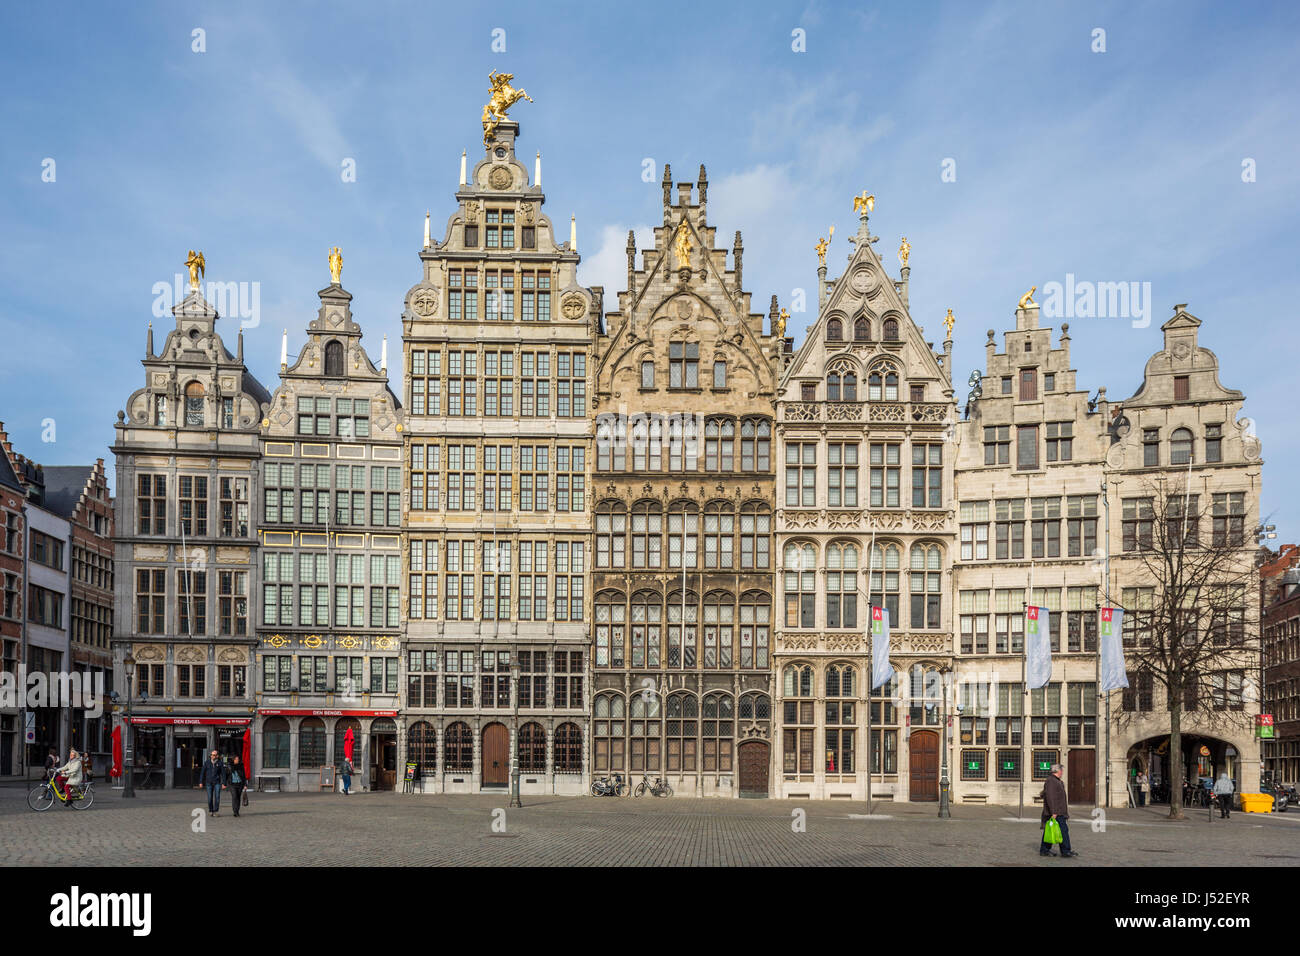 Guild houses, grote markt, Antwerpen, Belgium Stock Photo